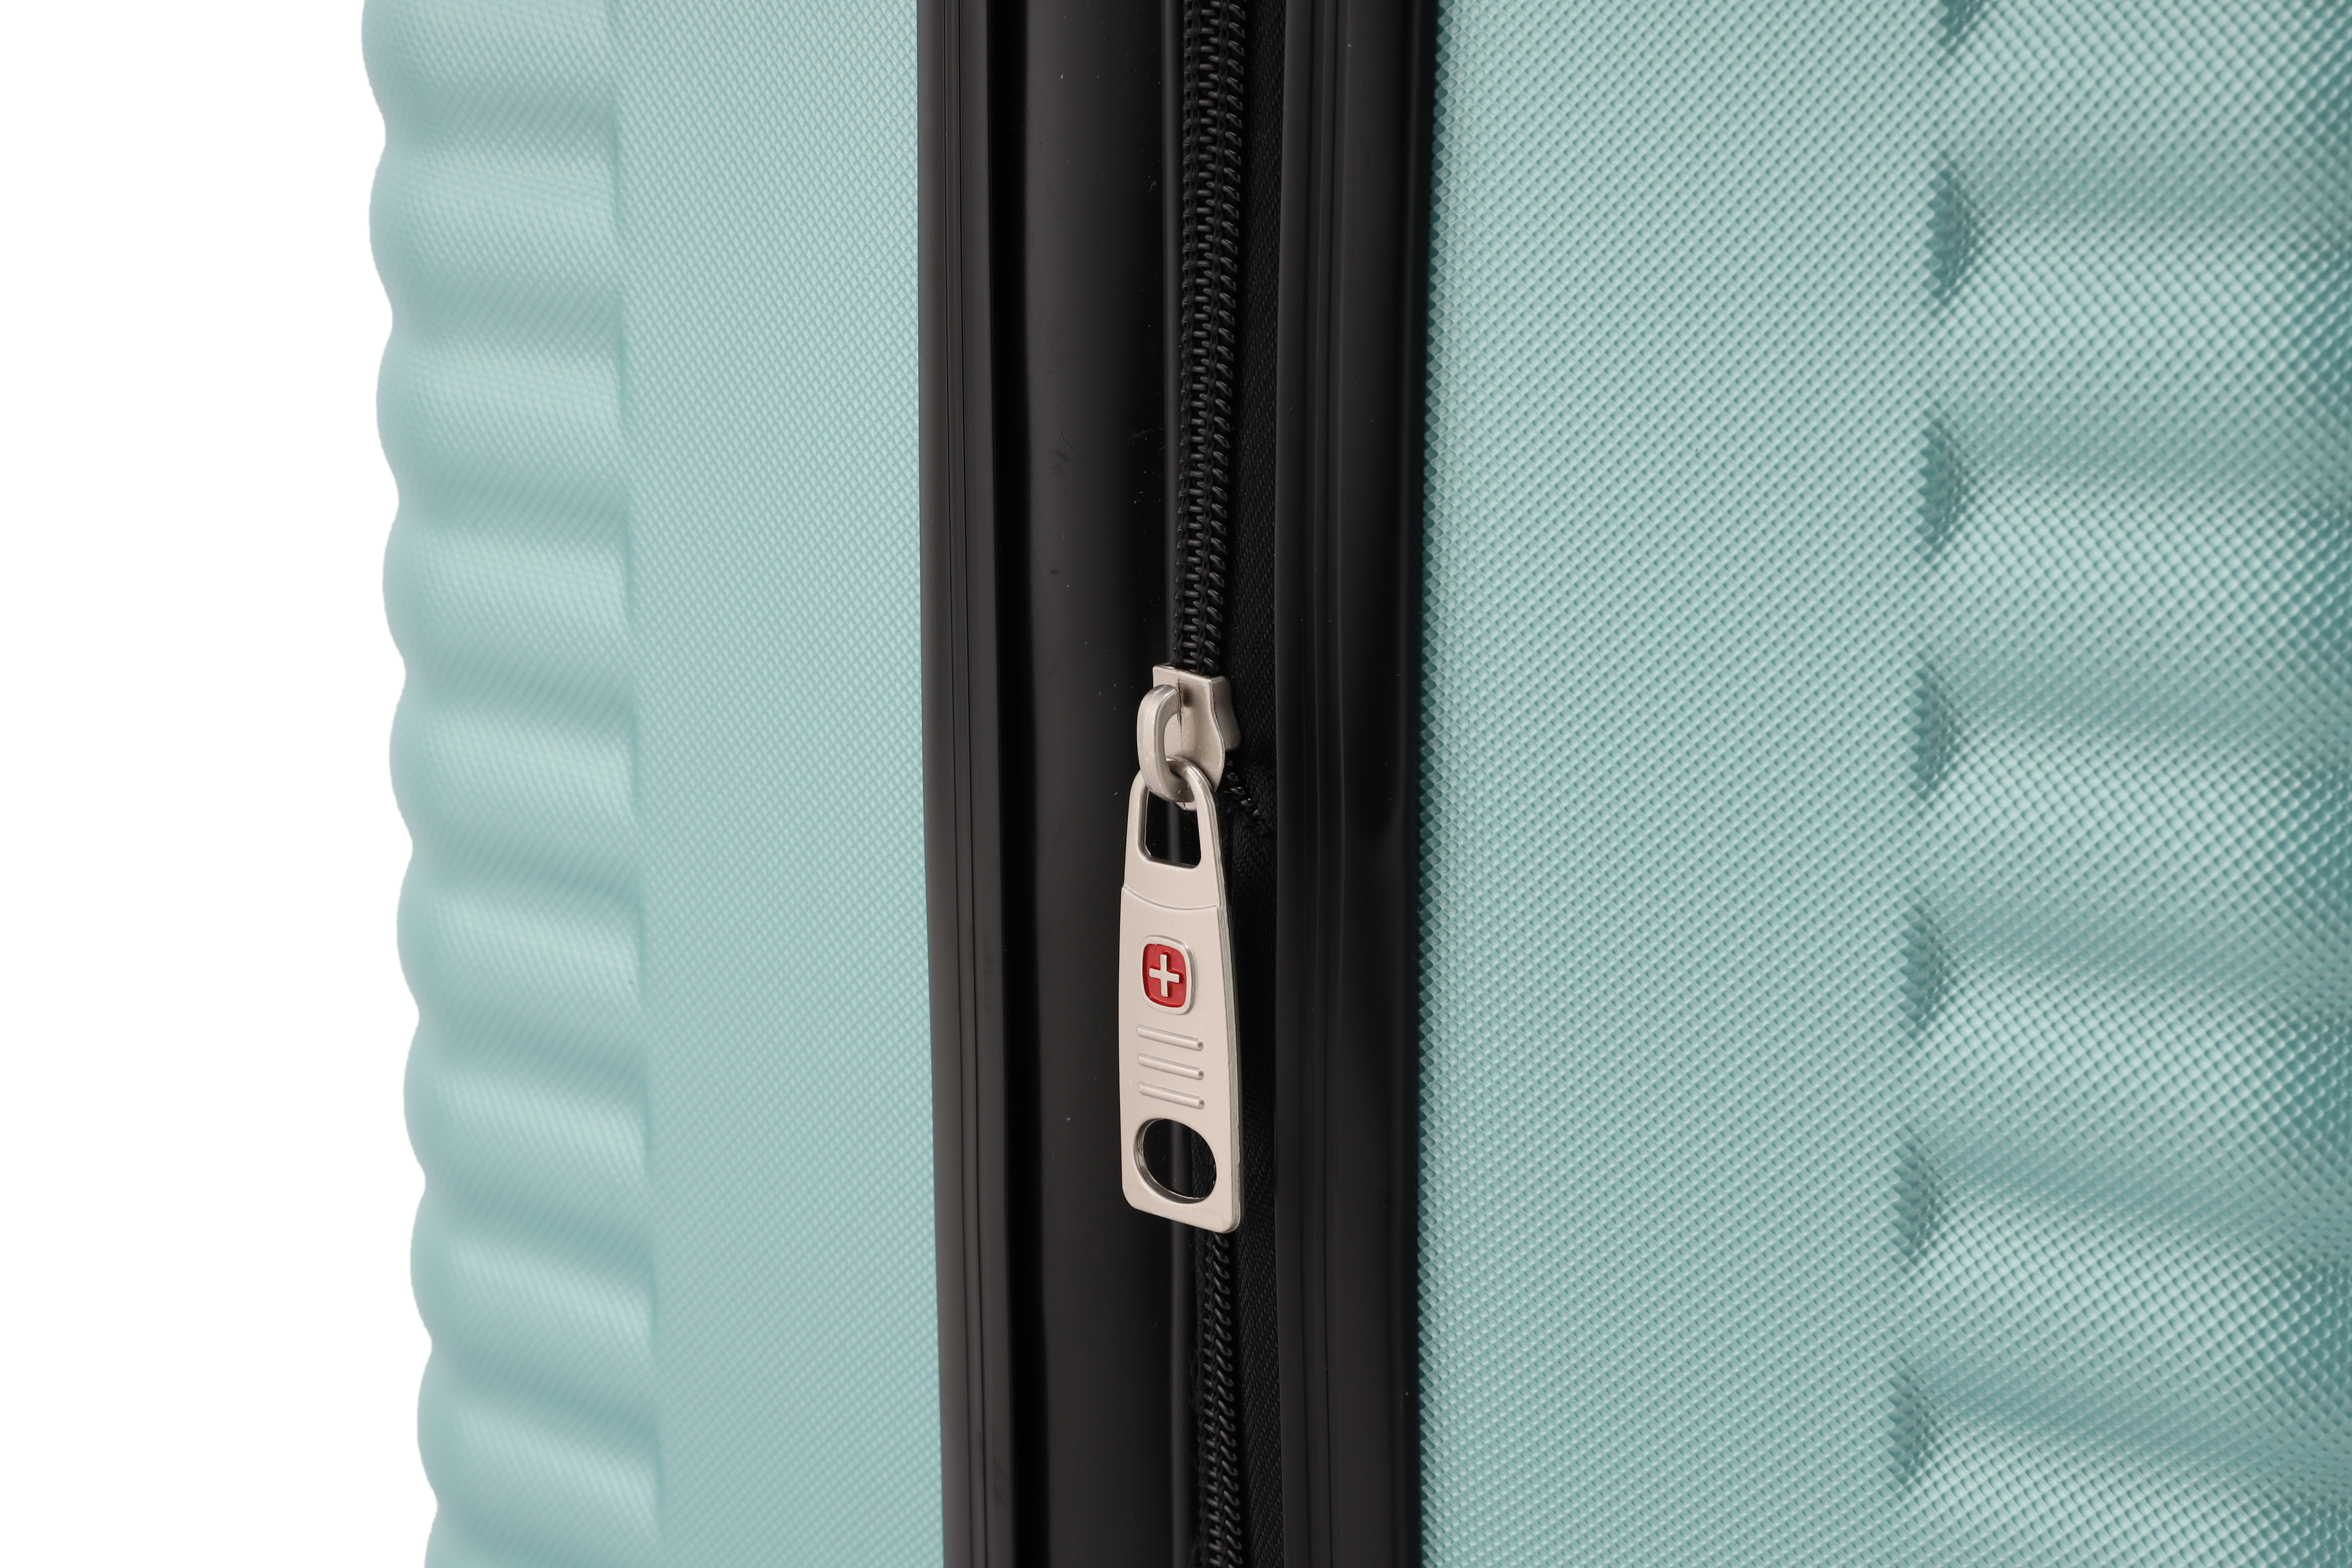 סט מזוודות קשיחות 3 יחידות מידות 28|24|20 אינץ' דגם London צבע מנטה Swiss Voyager - תיק איפור במתנה